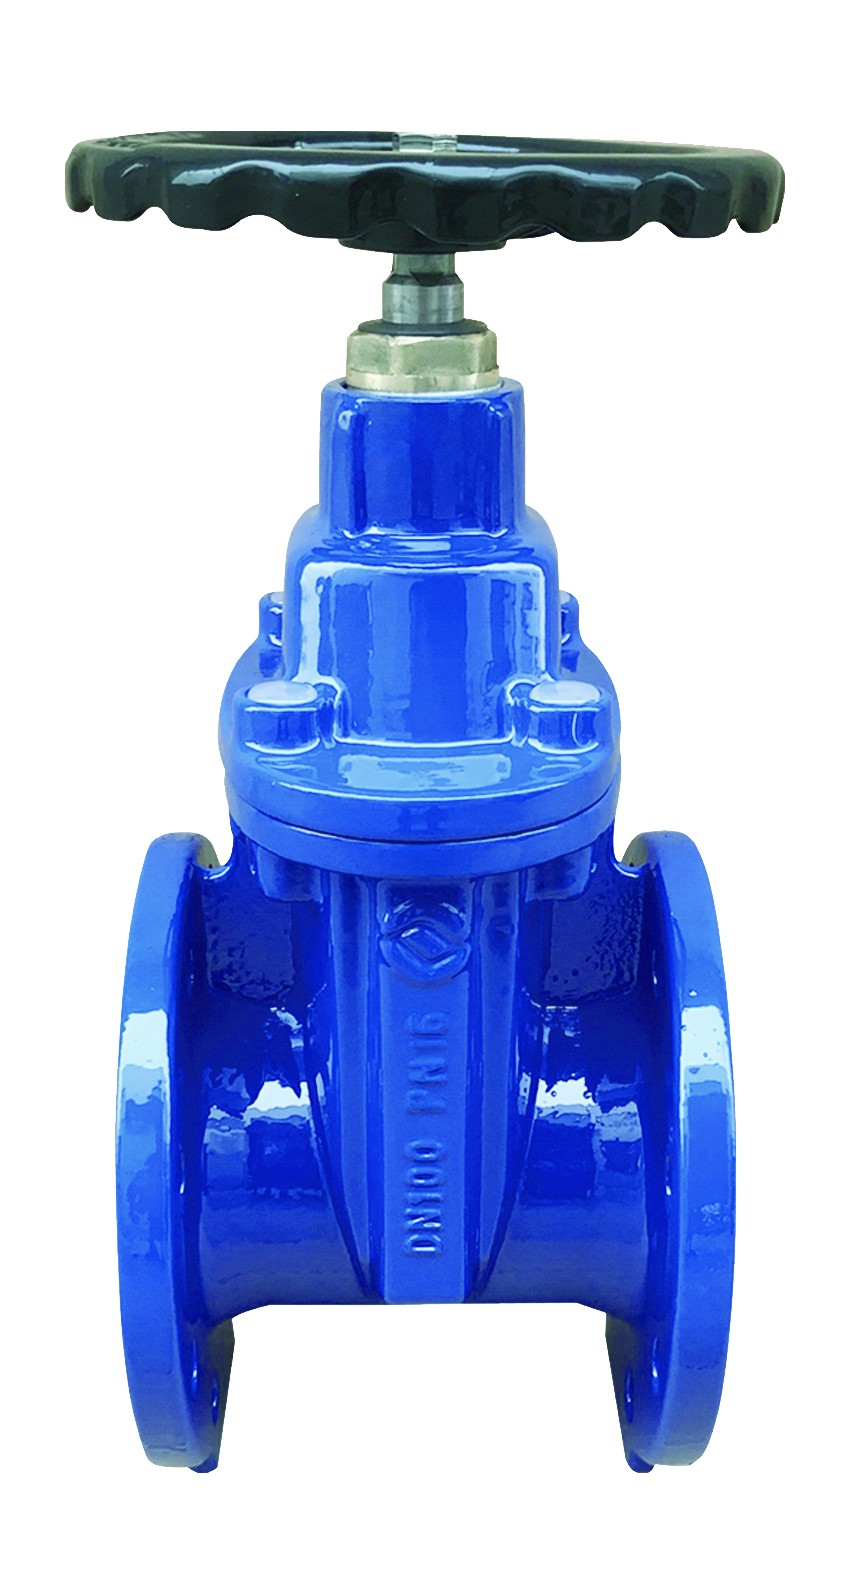 Rexroth S15A check valve